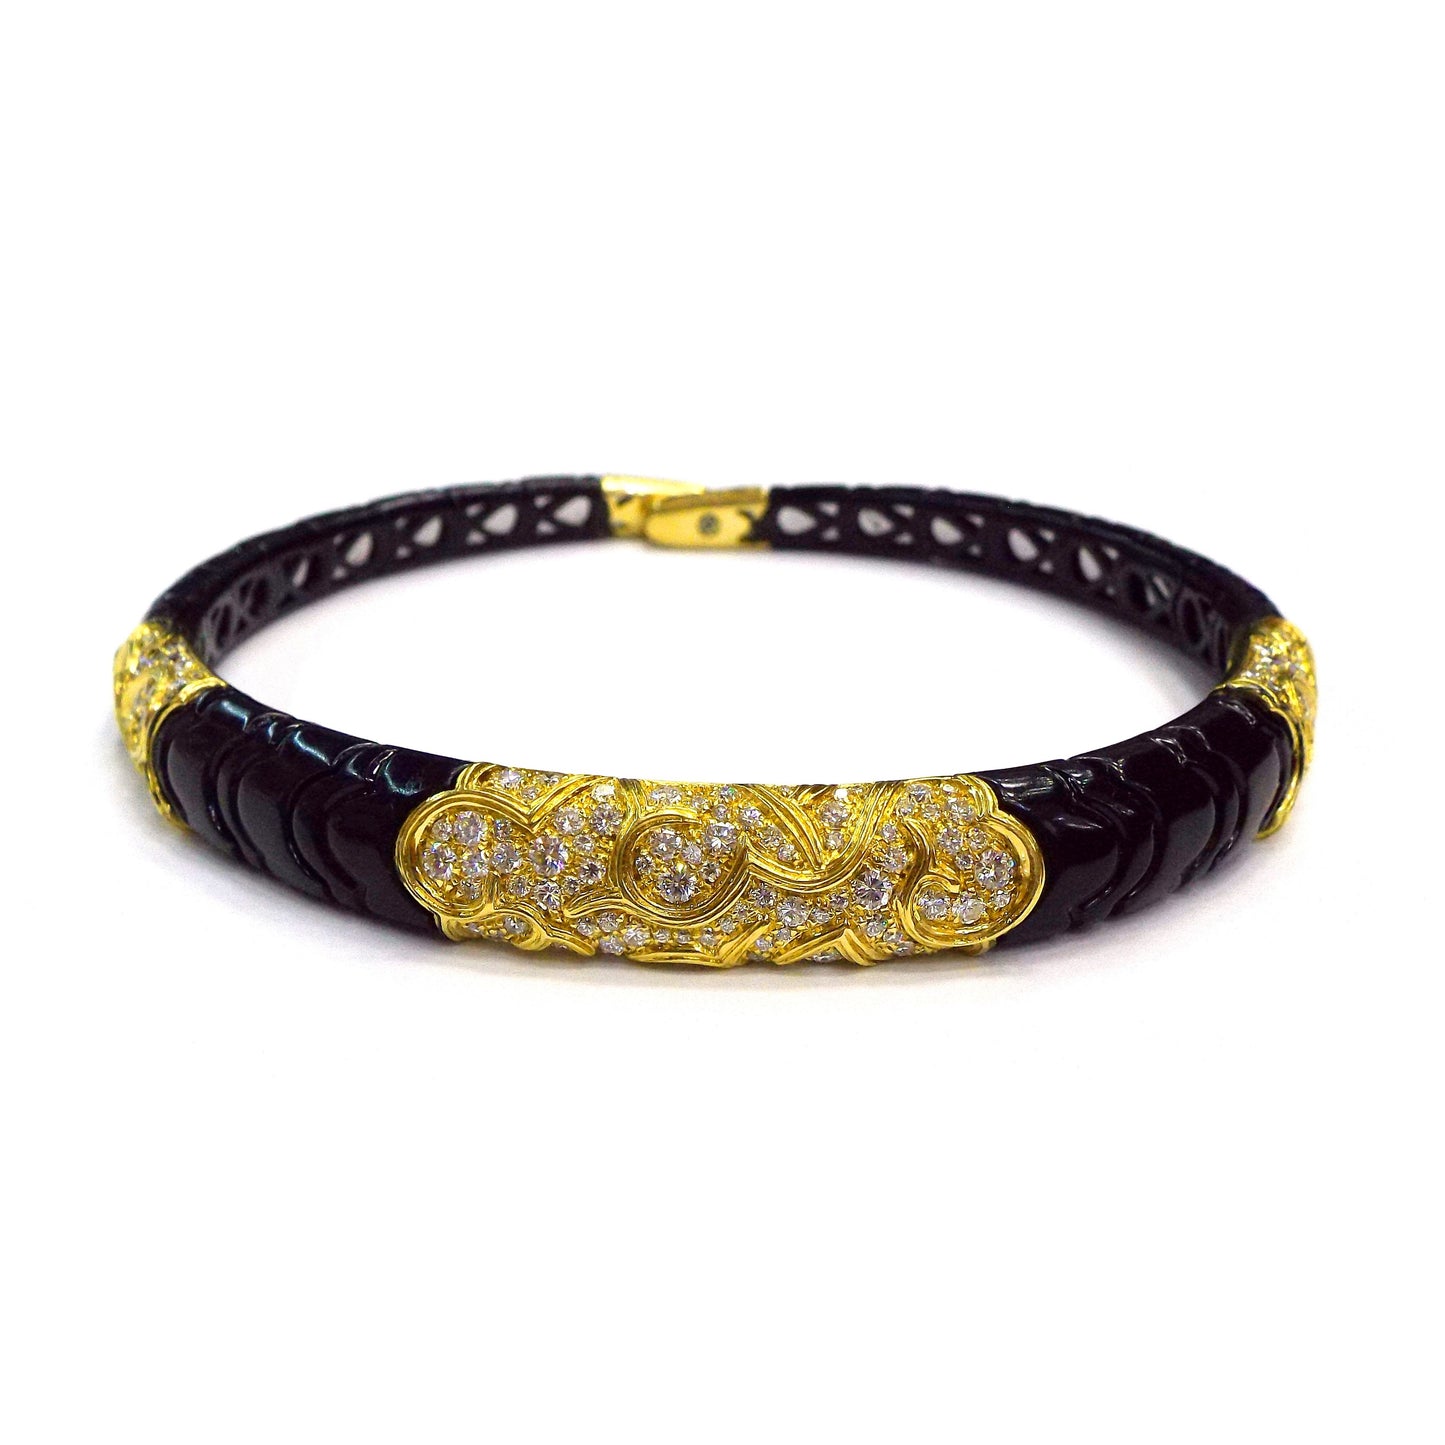 Marina B Gold Diamond 'Onda' Choker Necklace